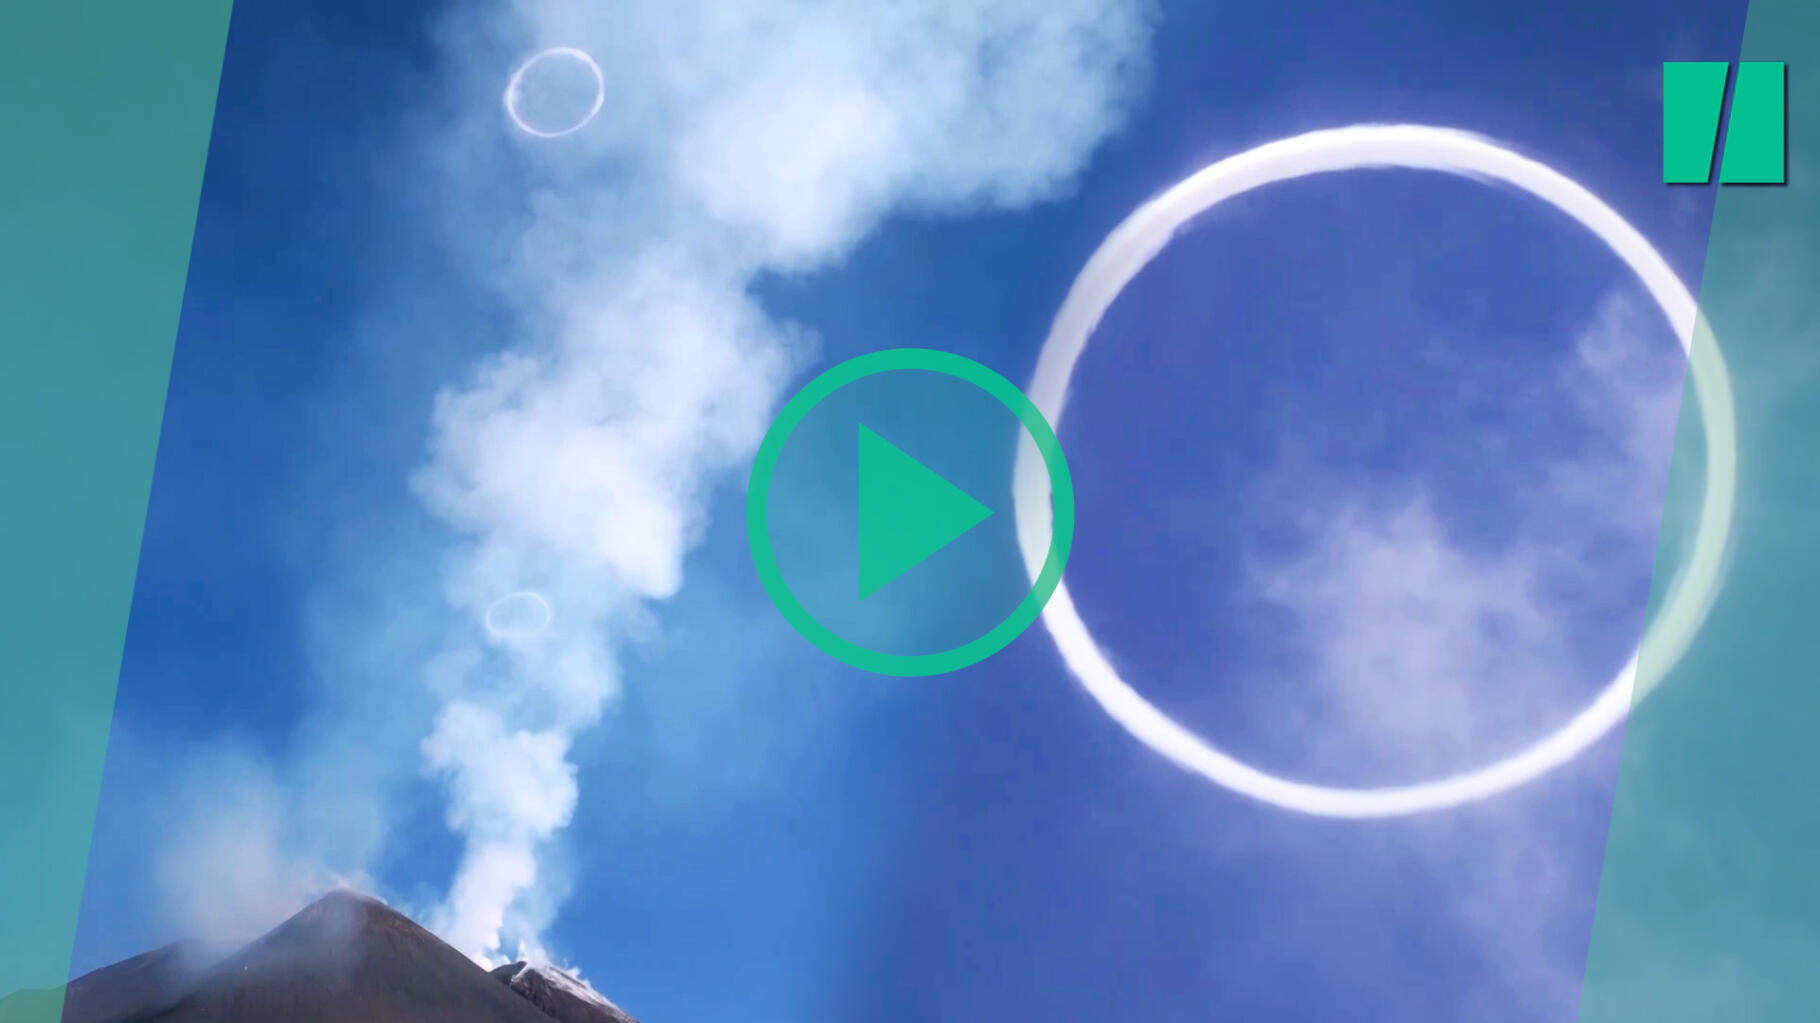 In Italia, l'Etna emette strani anelli di fumo sotto gli occhi attoniti dei turisti